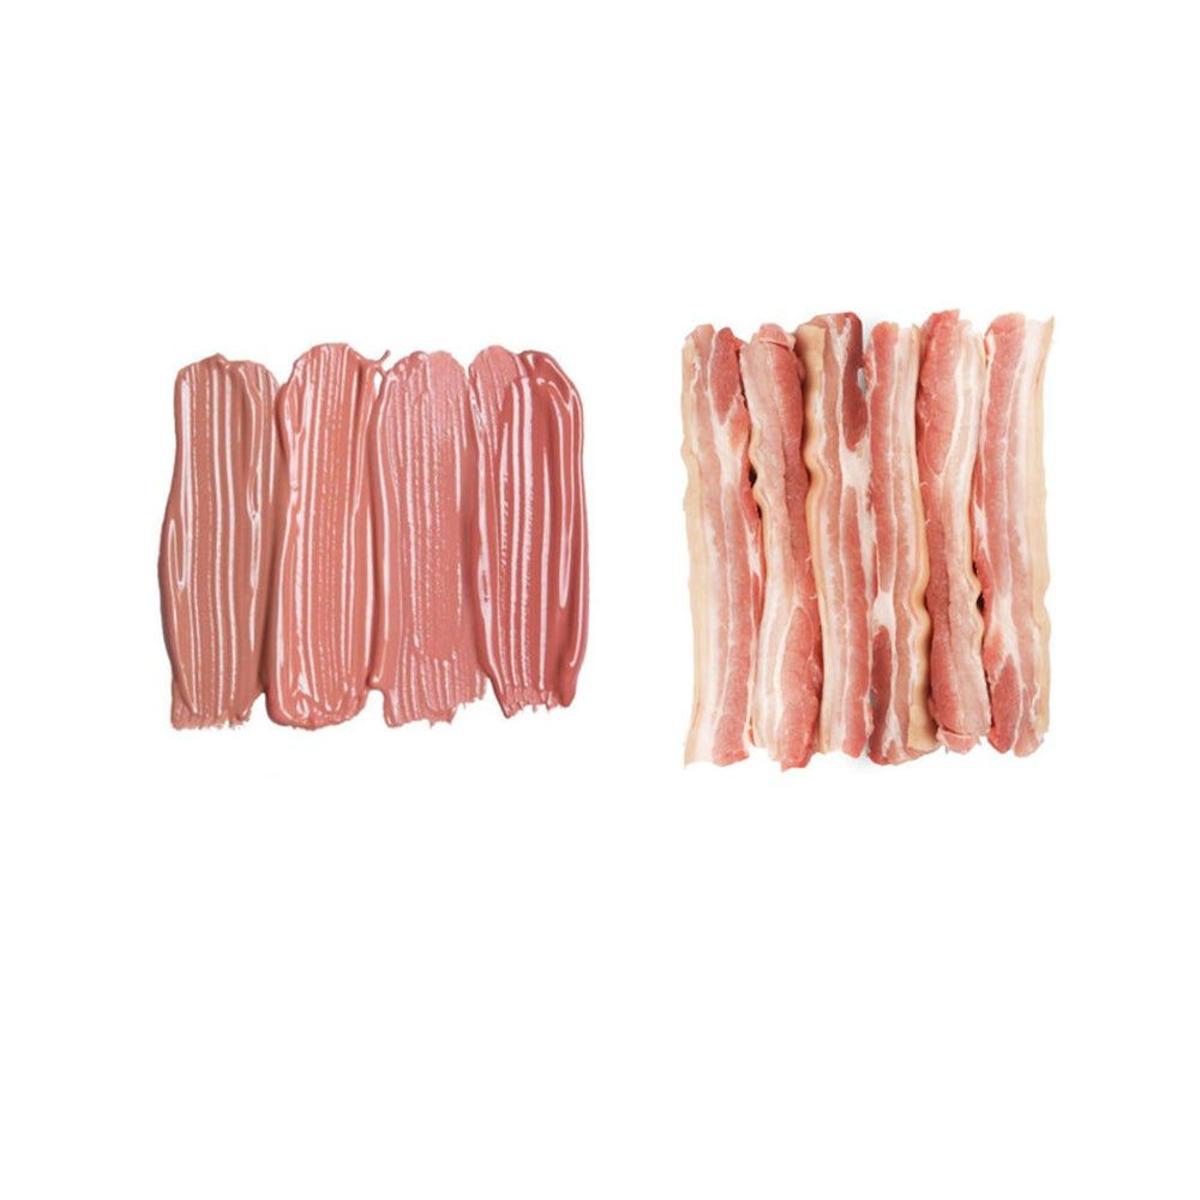 Maquillaje de Kim y Kylie y bacon